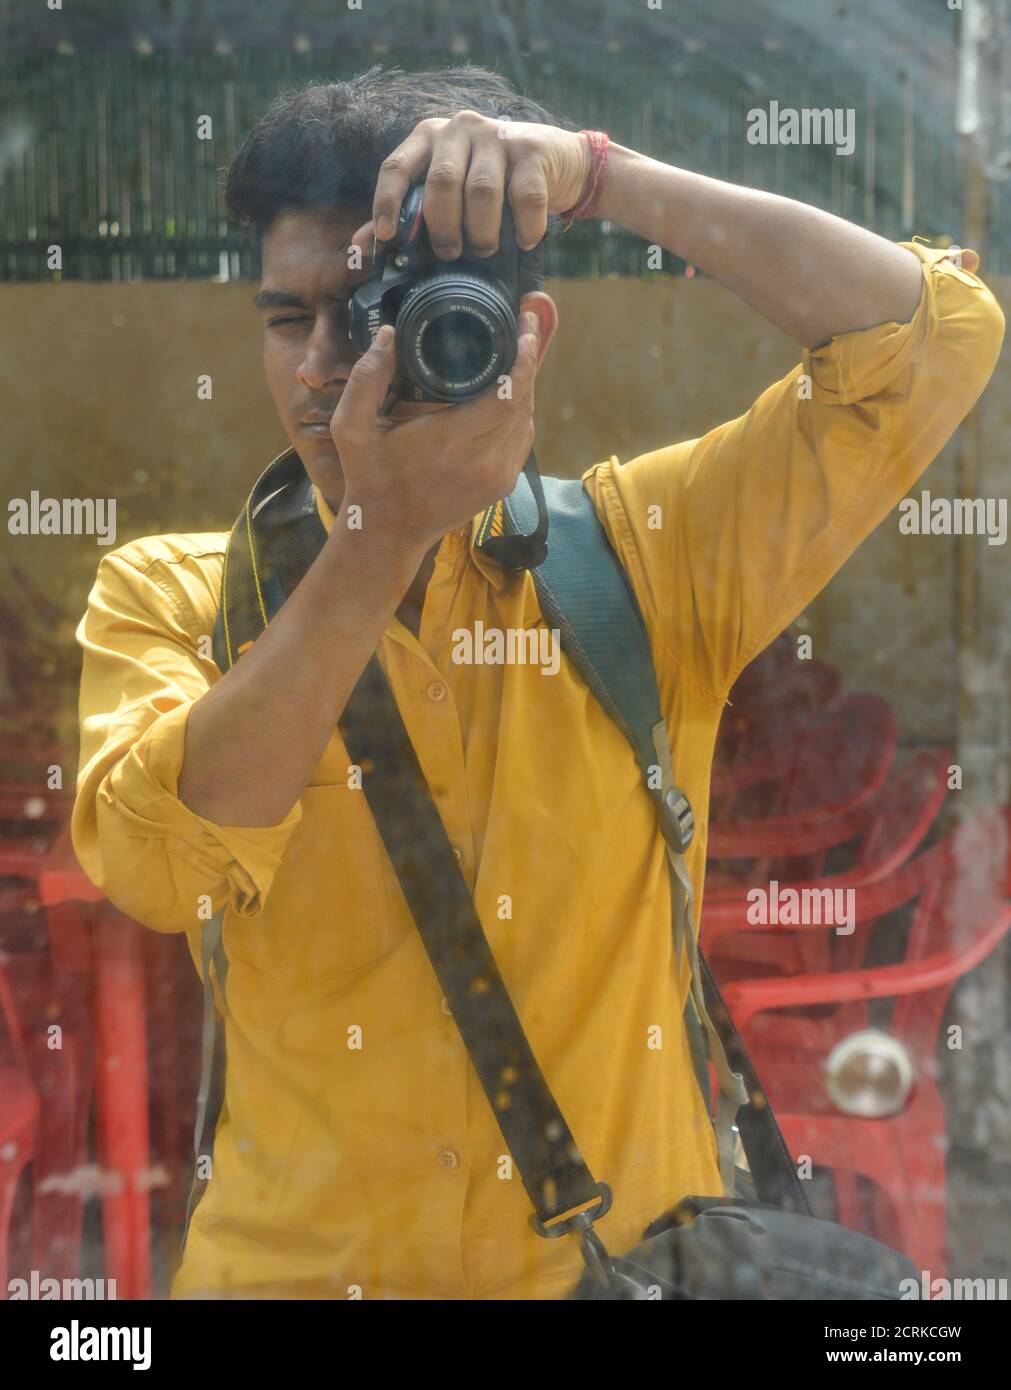 Ein indischer Junge klickt Bild von sich selbst durch Spiegel mit nikon-Kamera. Stockfoto